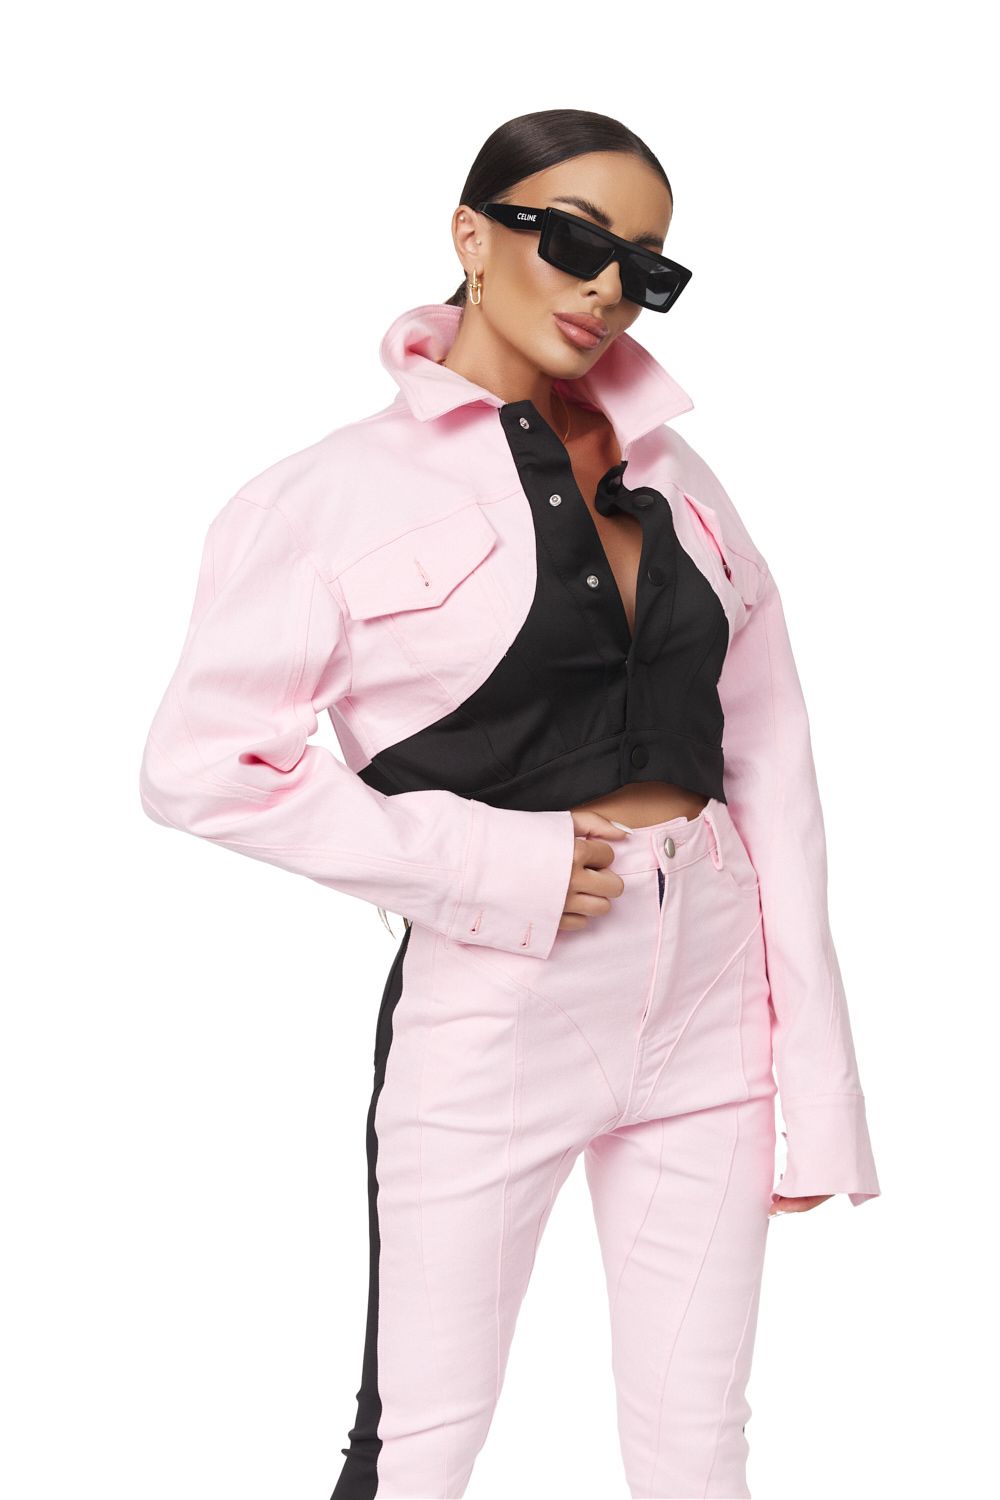 Yezia Bogas rövid rózsaszín kabát nőknek